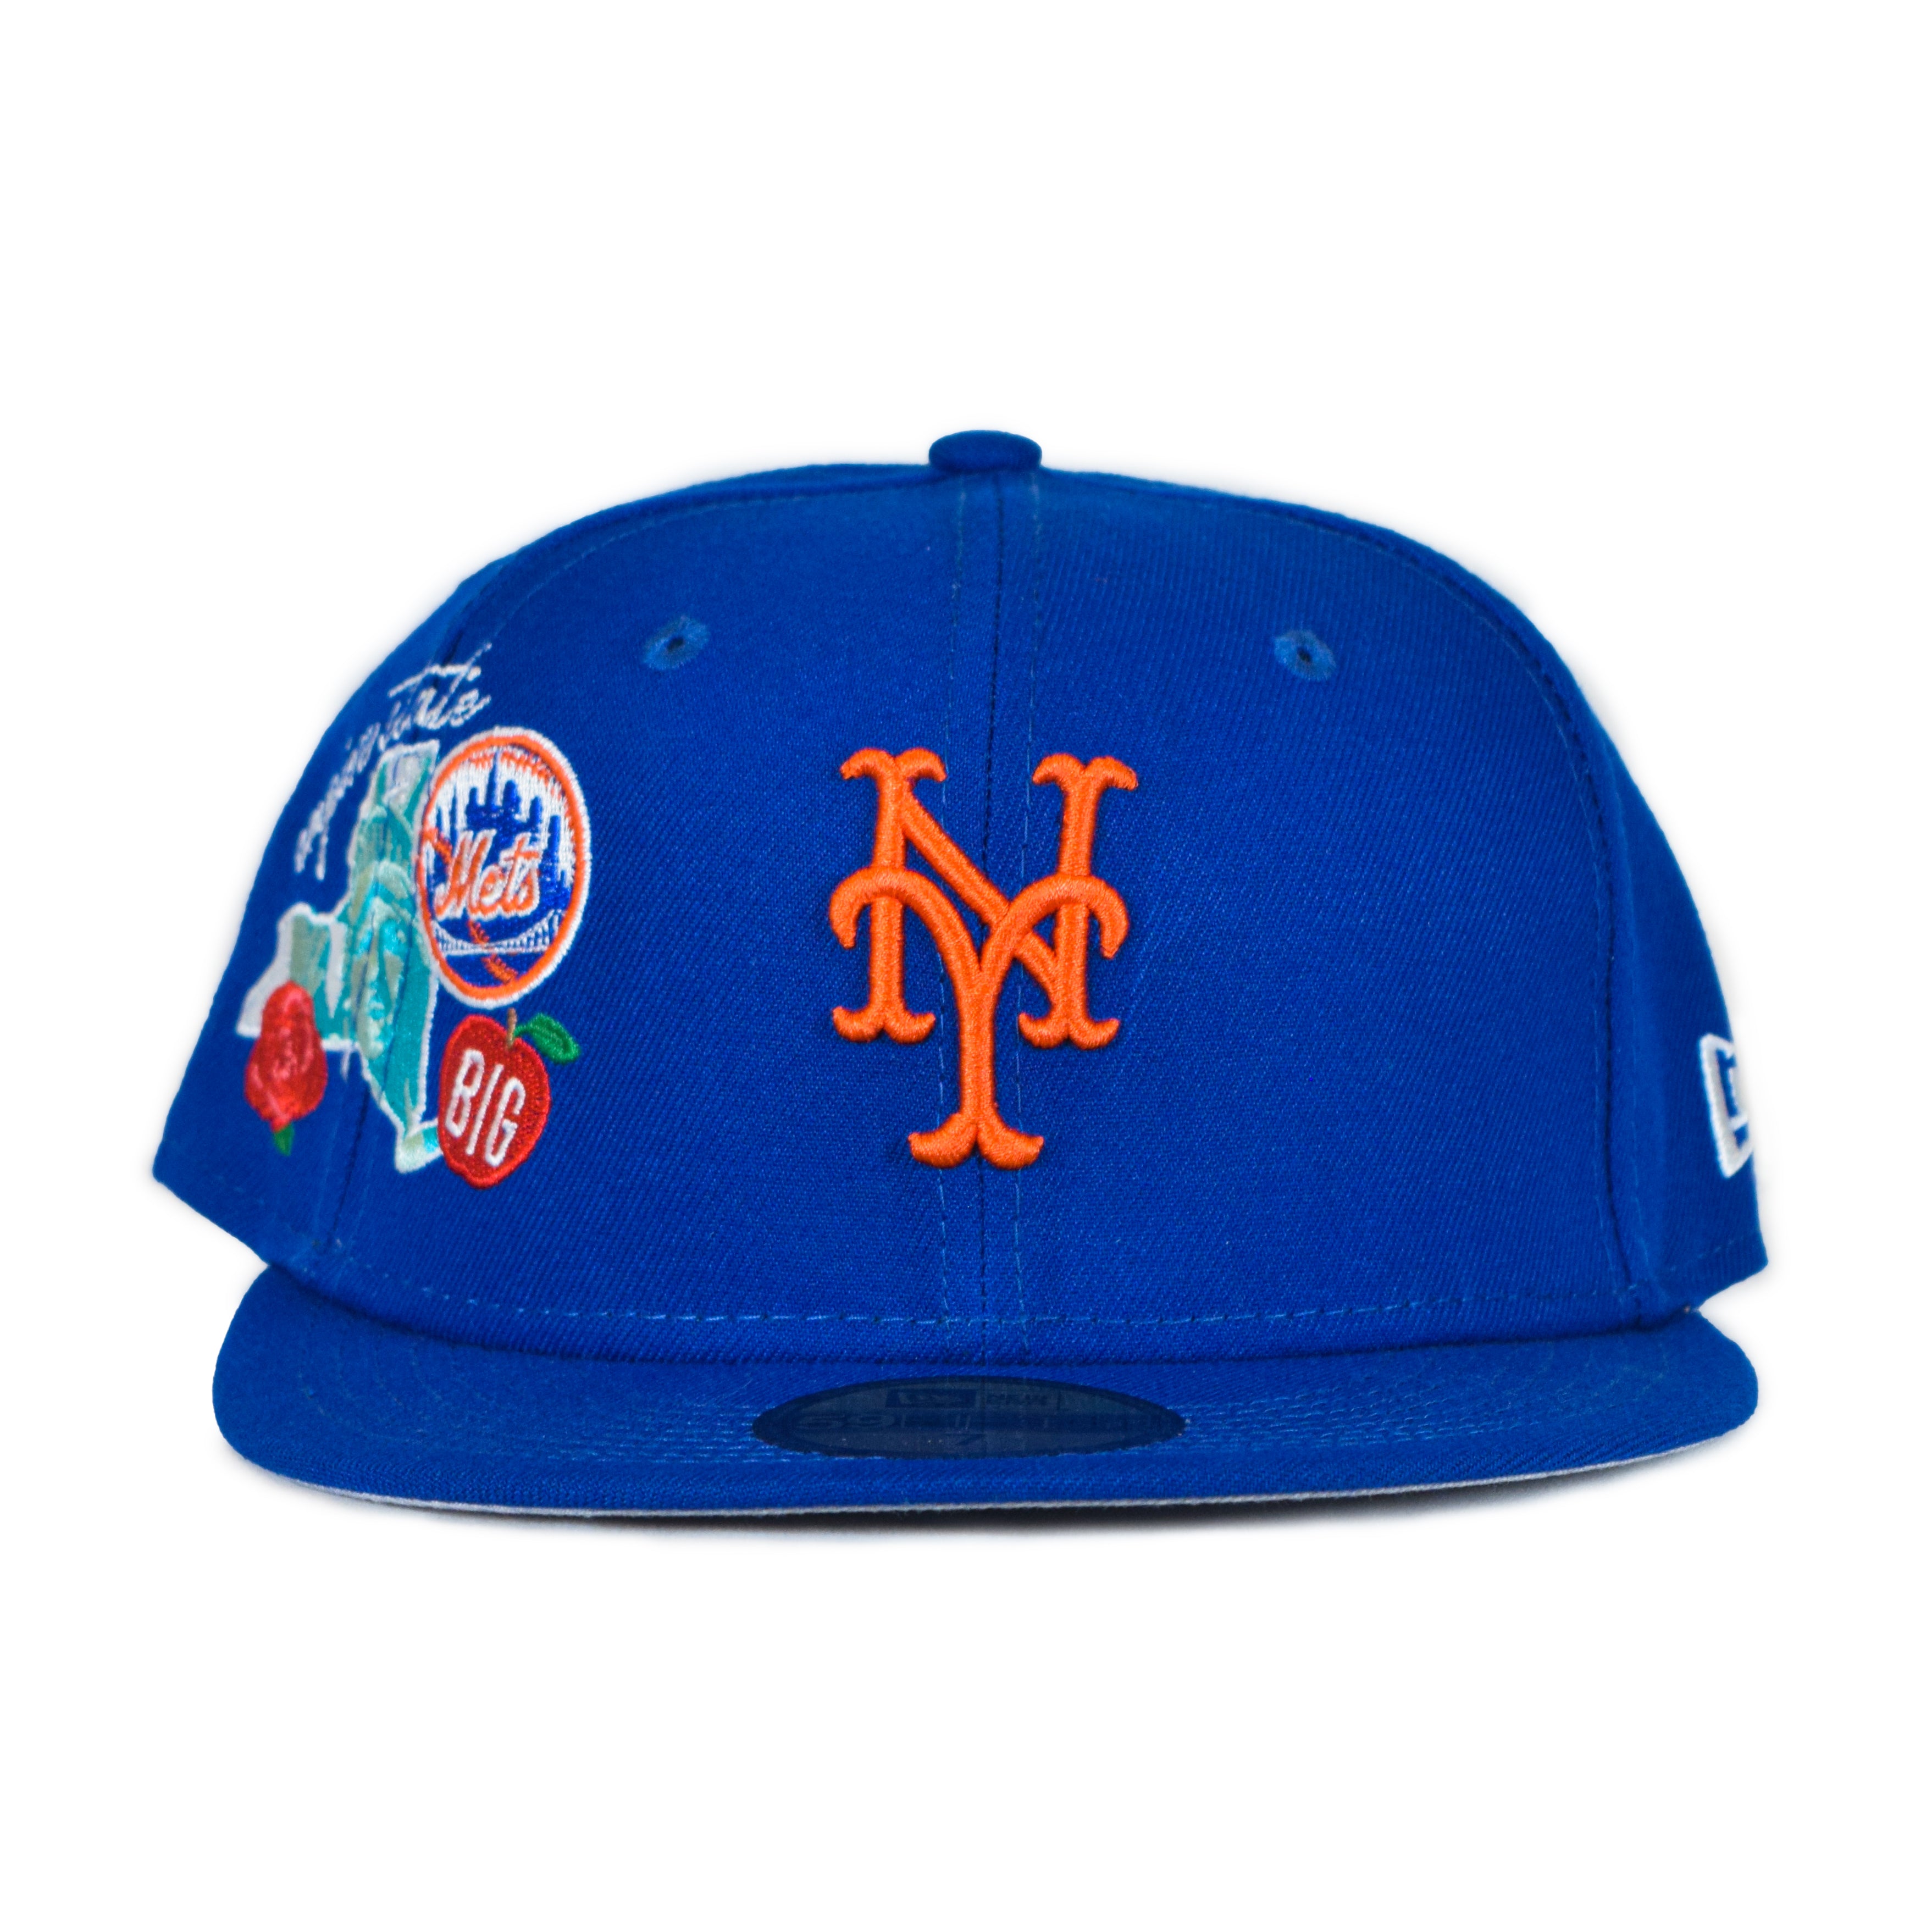 Mitchell & Ness Pop UV New Jersey Nets Patch Snapback Hat - Light Blue, White